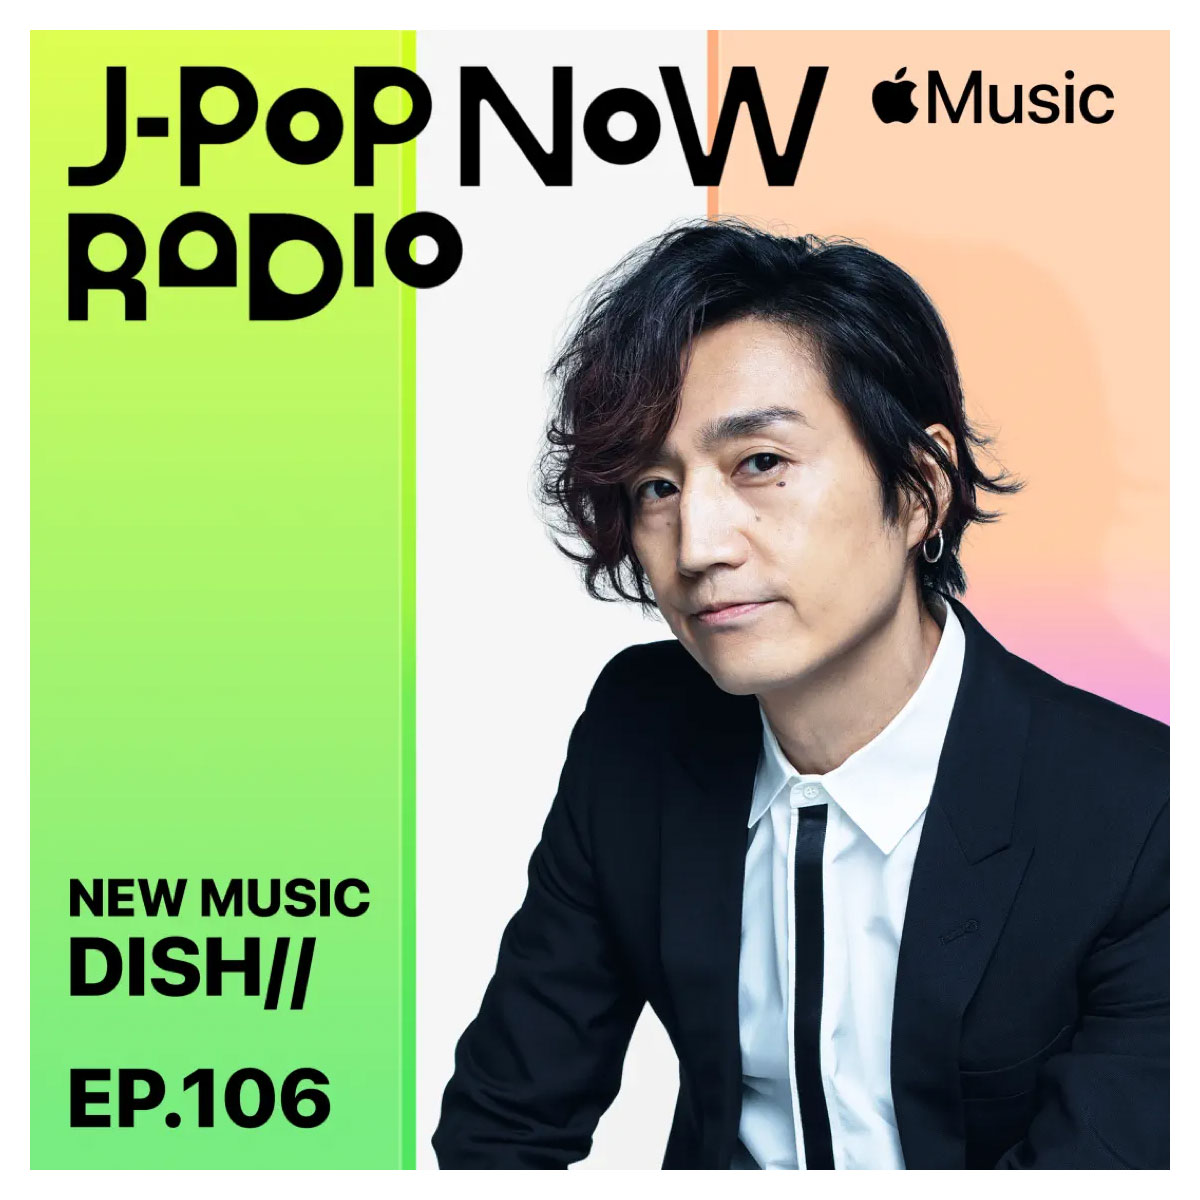 J-Pop Now Radio with Kentaro Ochiai 特集：DISH//